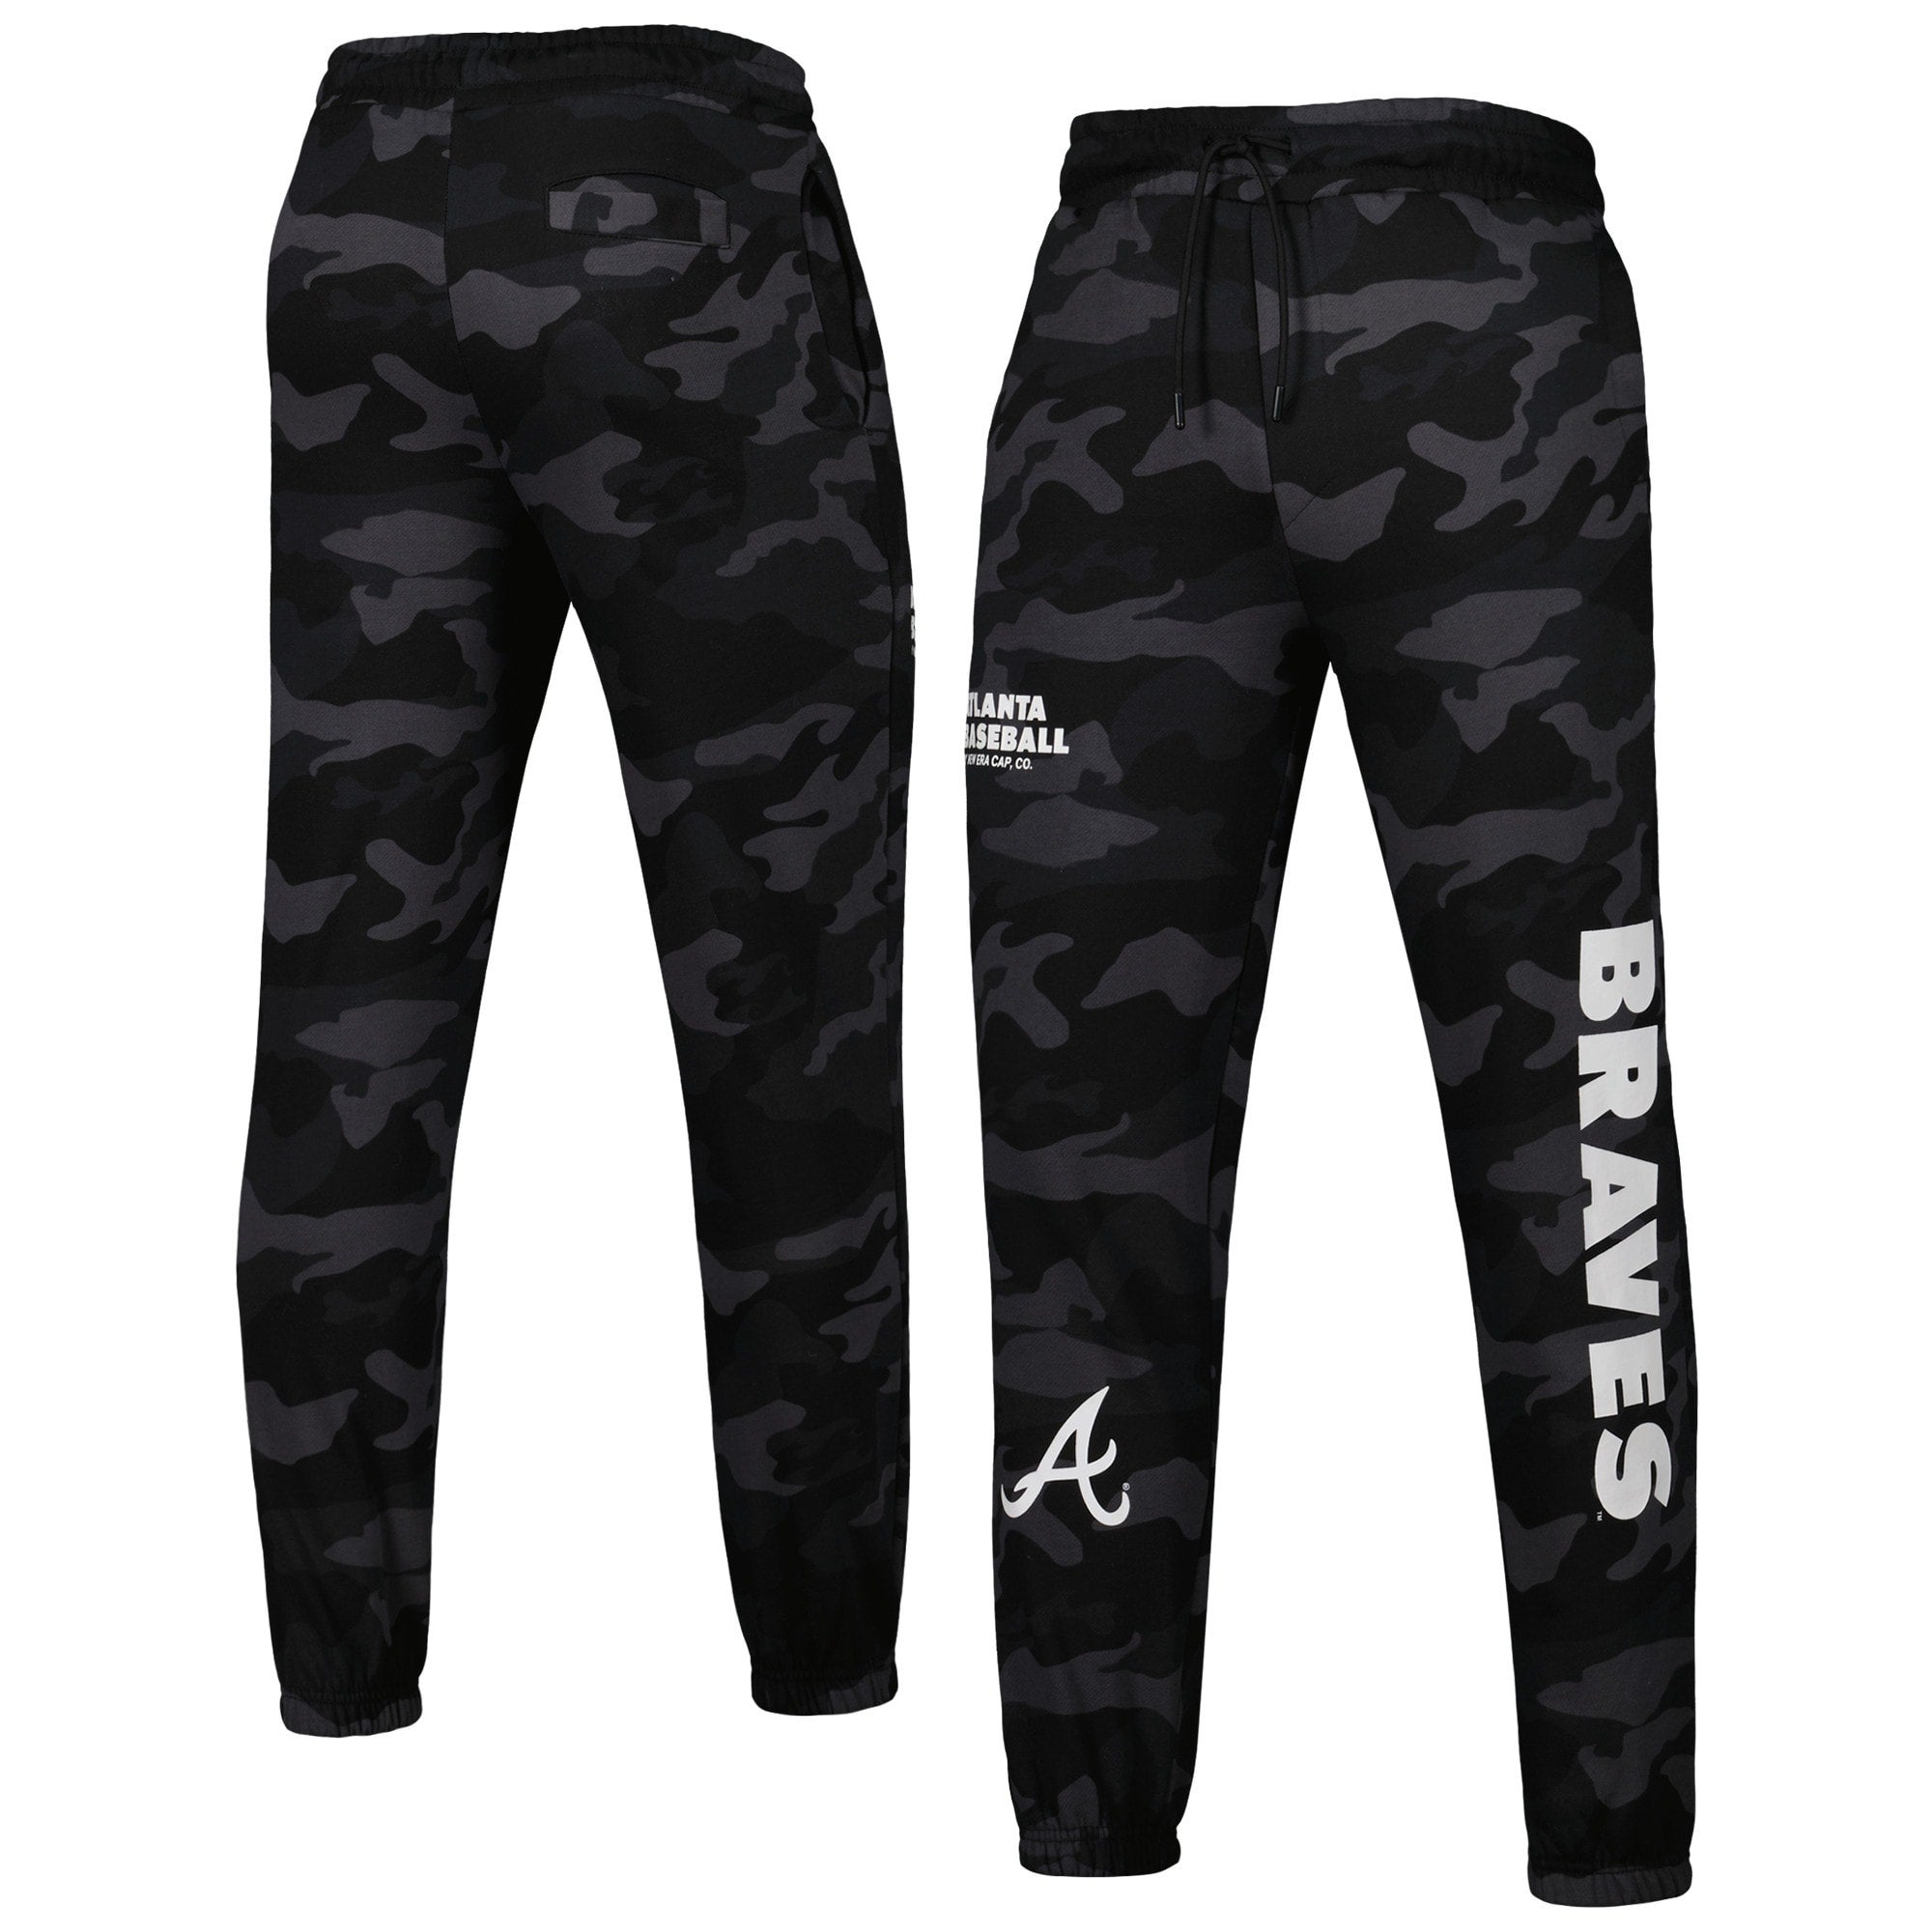 New Era Braves Jogger Pants - Men's